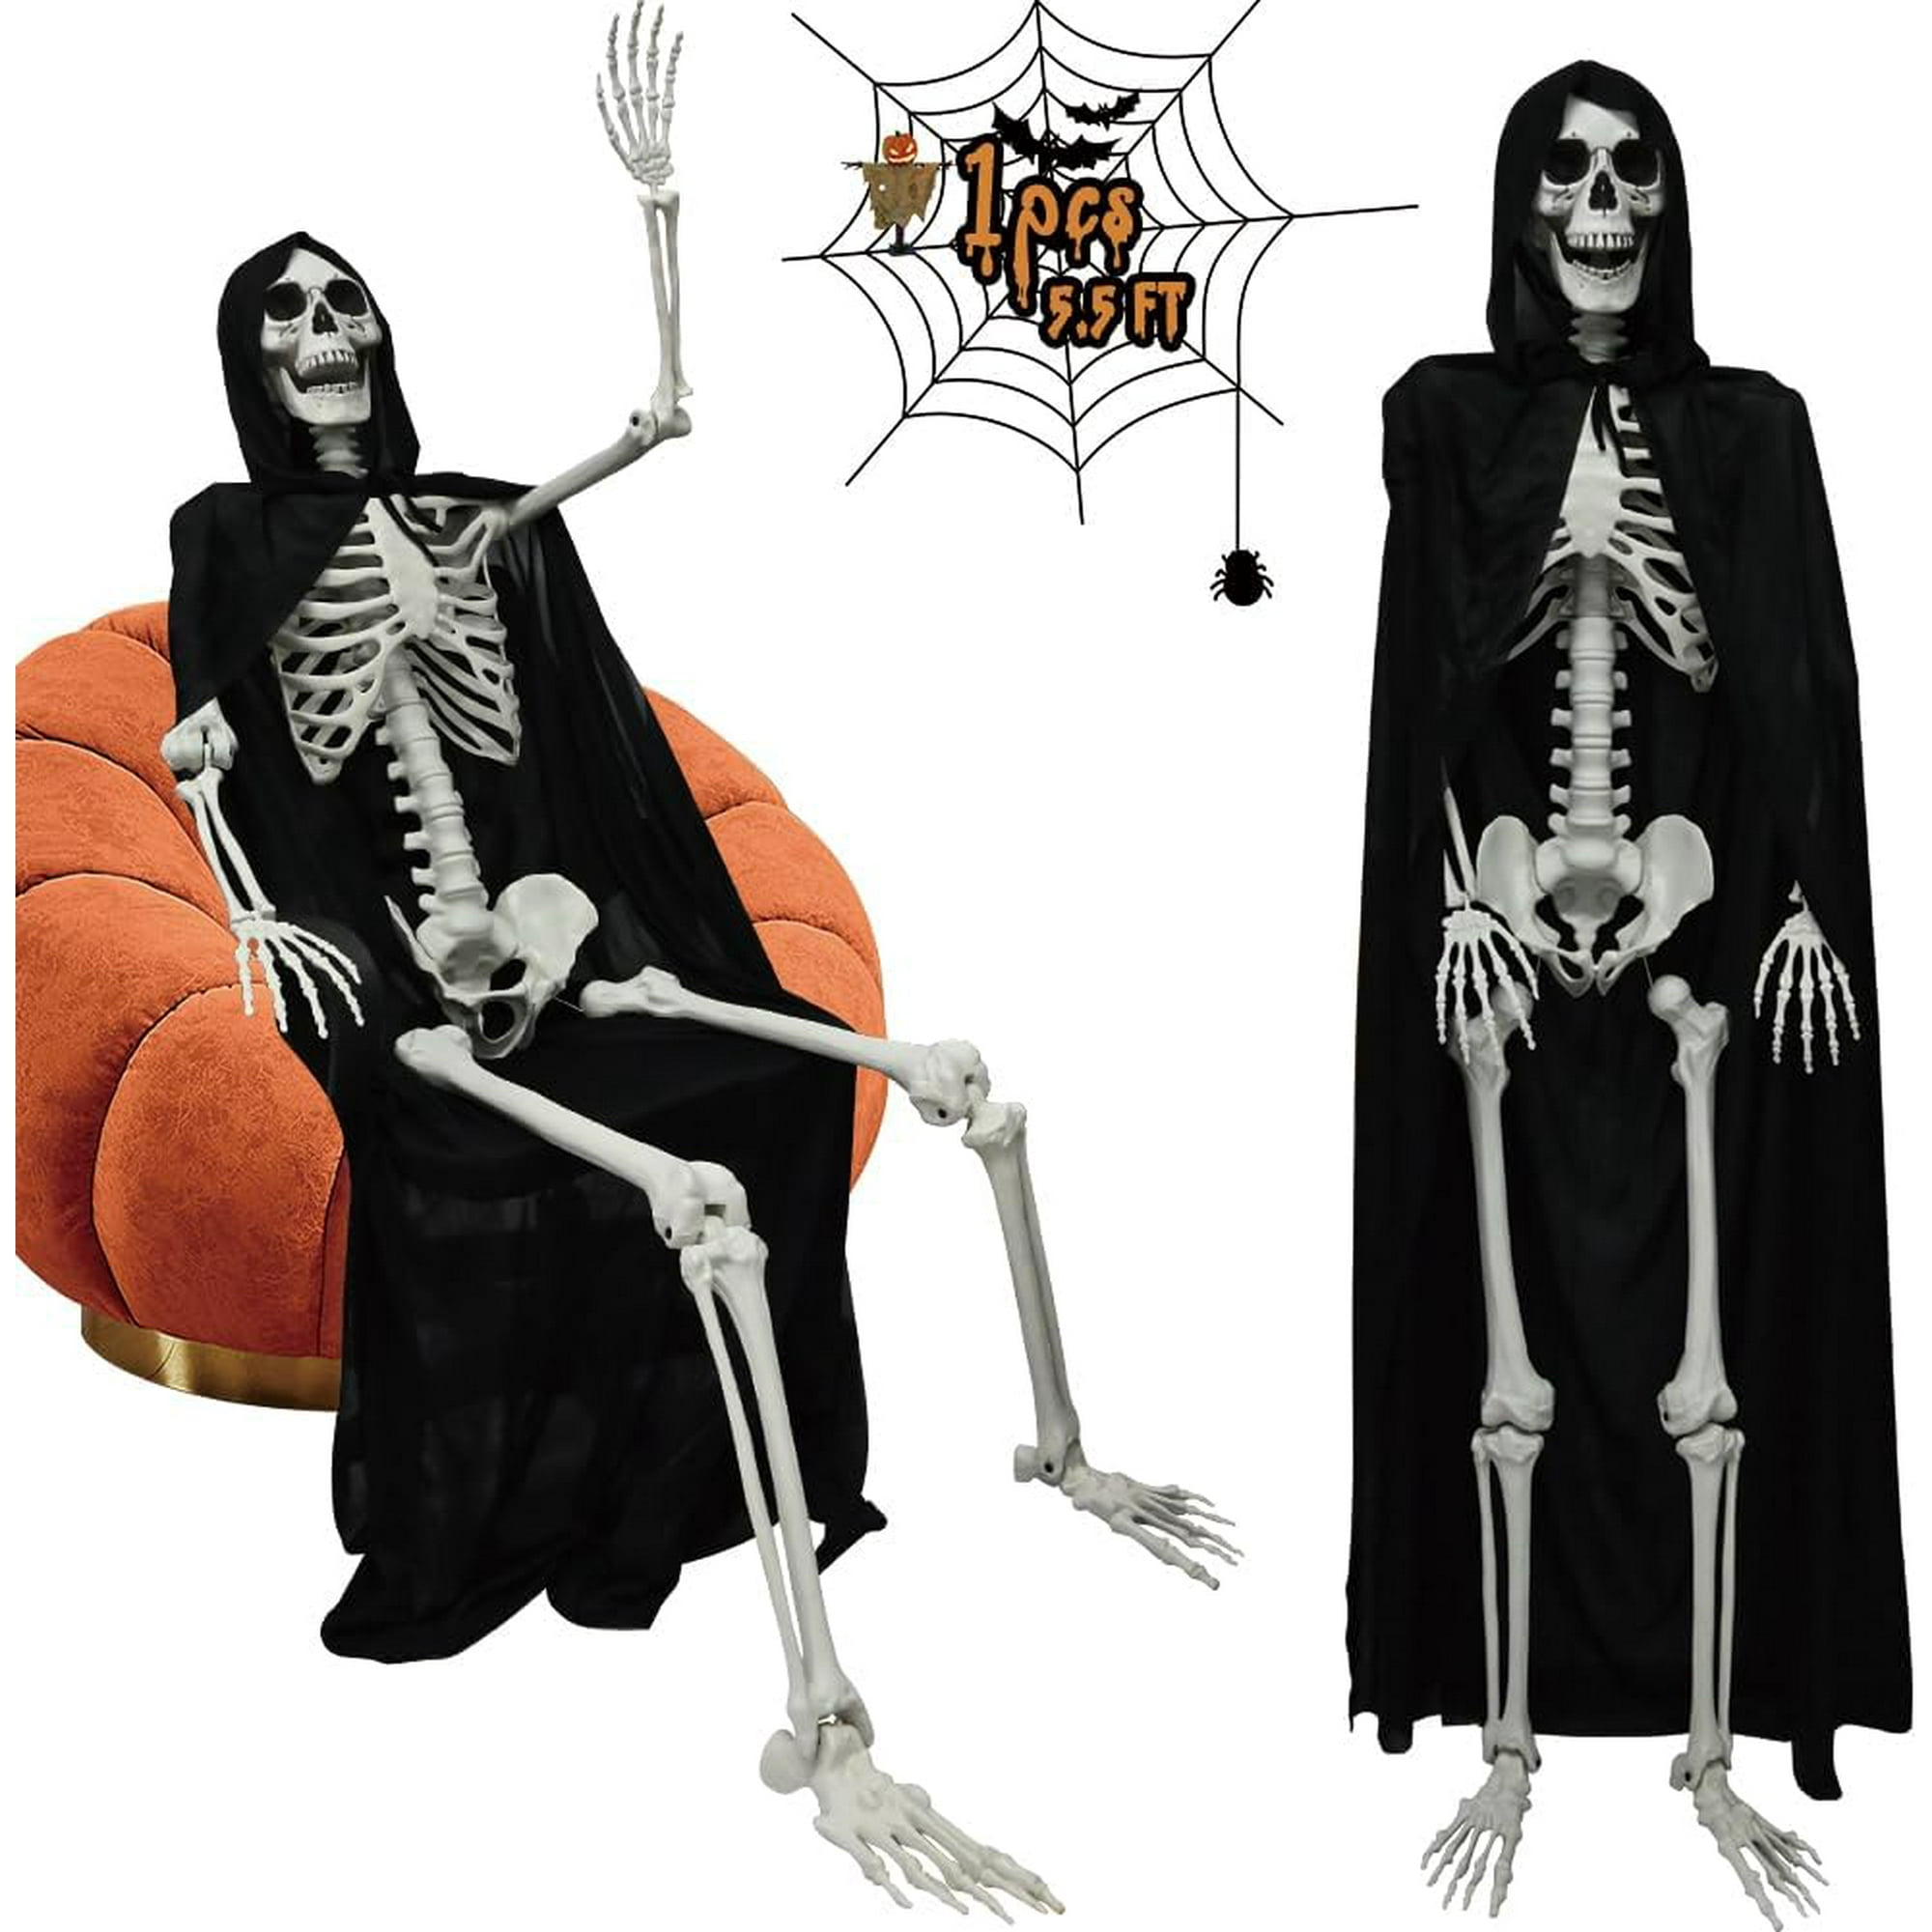  Esqueleto de Halloween de 5.4 pies, esqueletos humanos